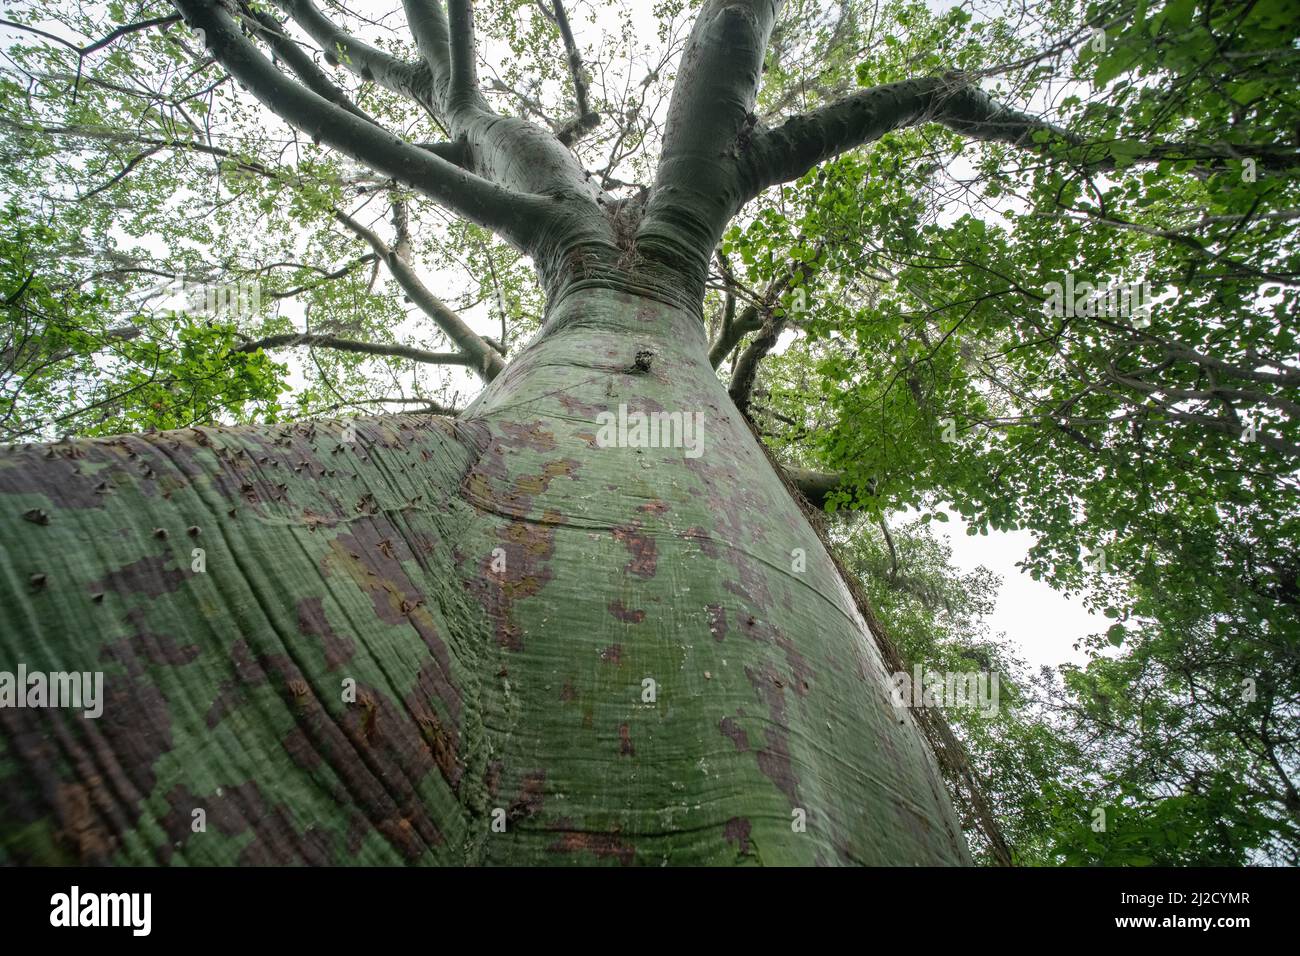 Ceiba trischistandra, un grande albero di bottiglie trovato nell'ecosistema arido della foresta secca del sud Ecuador e del nord Perù. Foto Stock